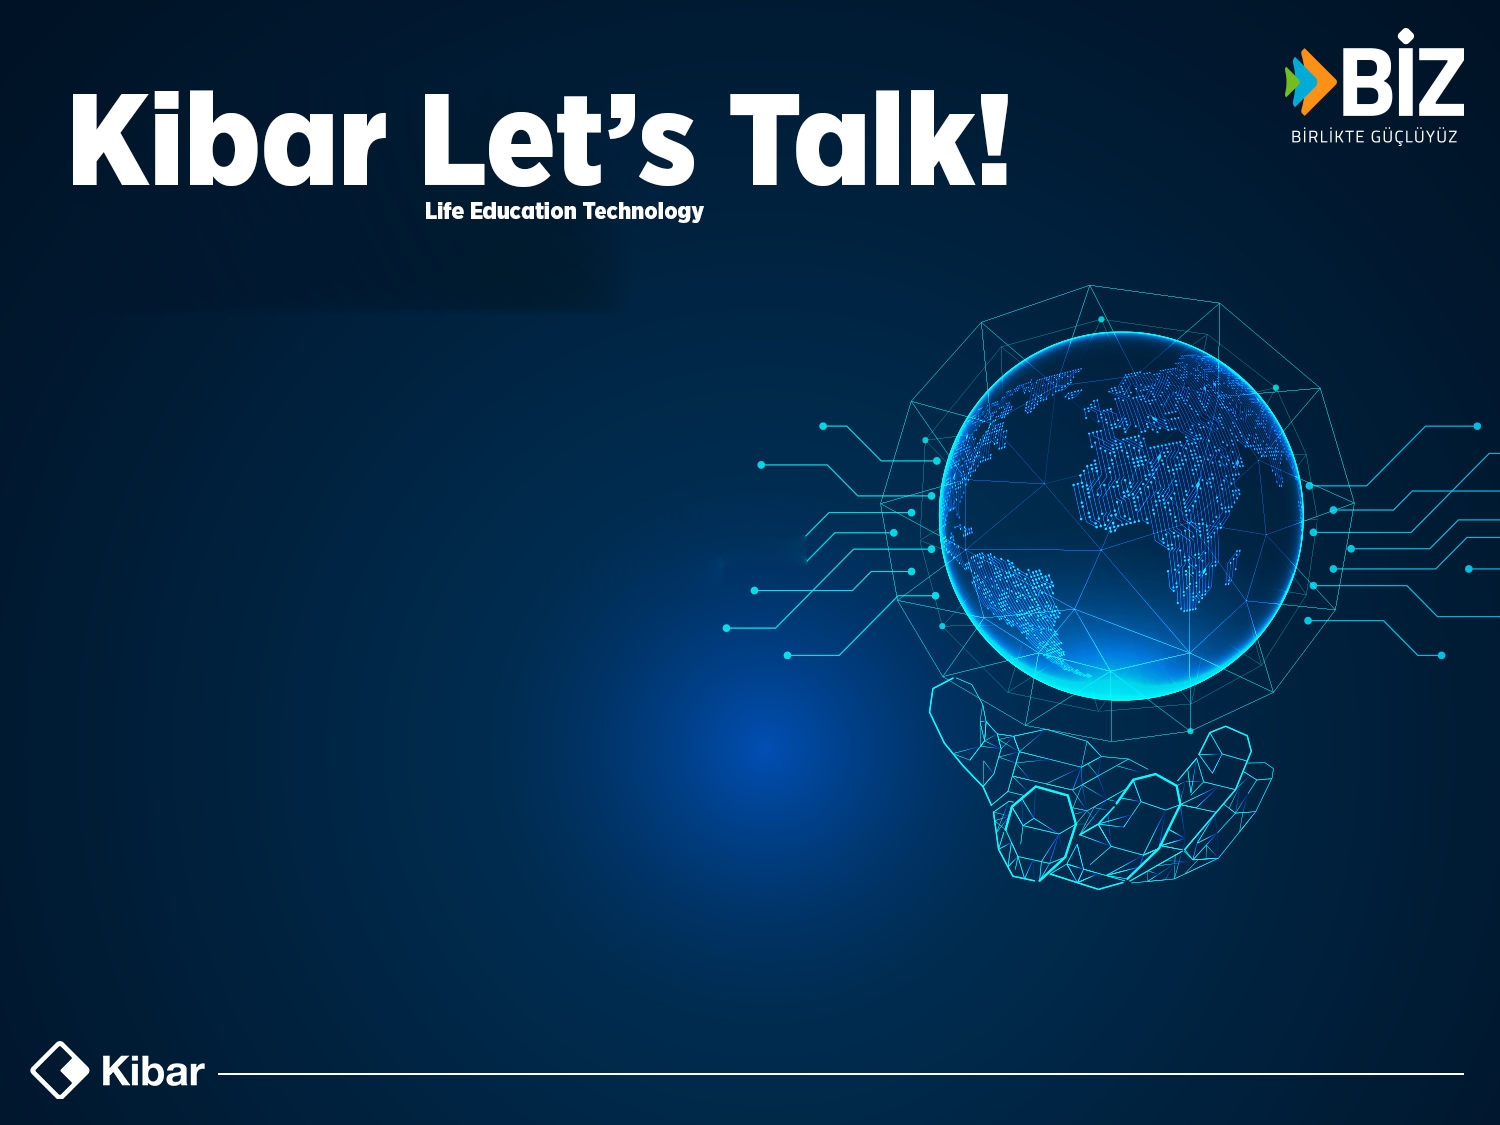 Kibar Holding’in webinar serisi Kibar Let’s Talk başladı 